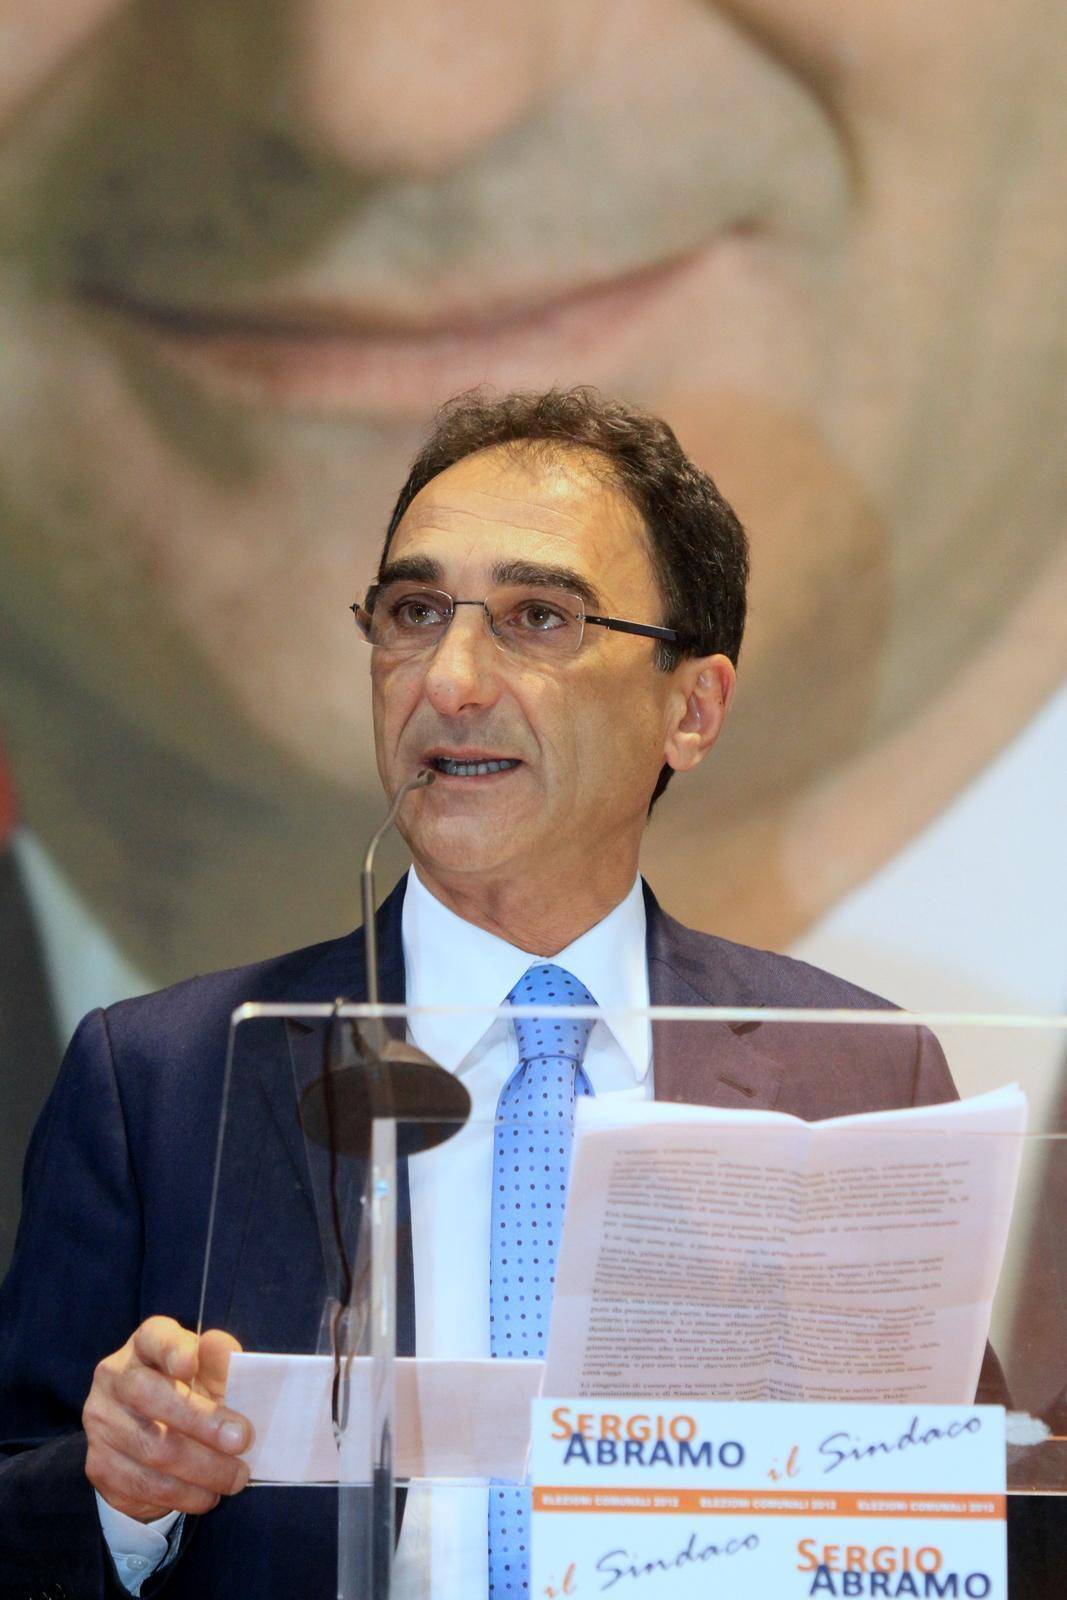 A Catanzaro Abramo eletto nuovo sindaco Palermo, spoglio finito